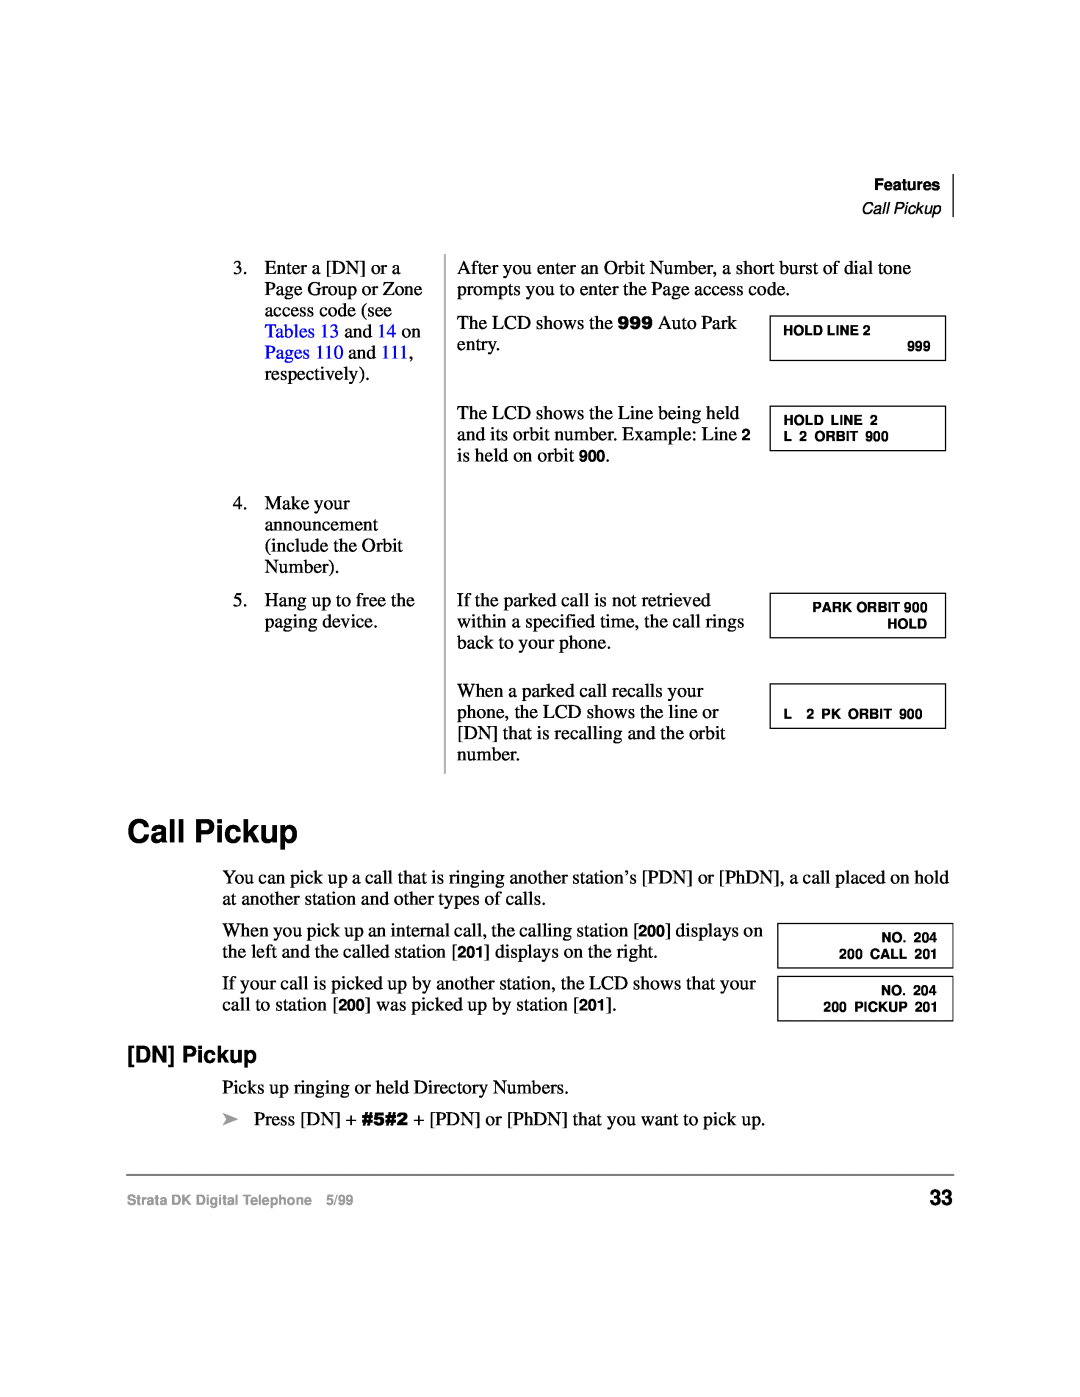 Toshiba CT manual Call Pickup, DN Pickup 